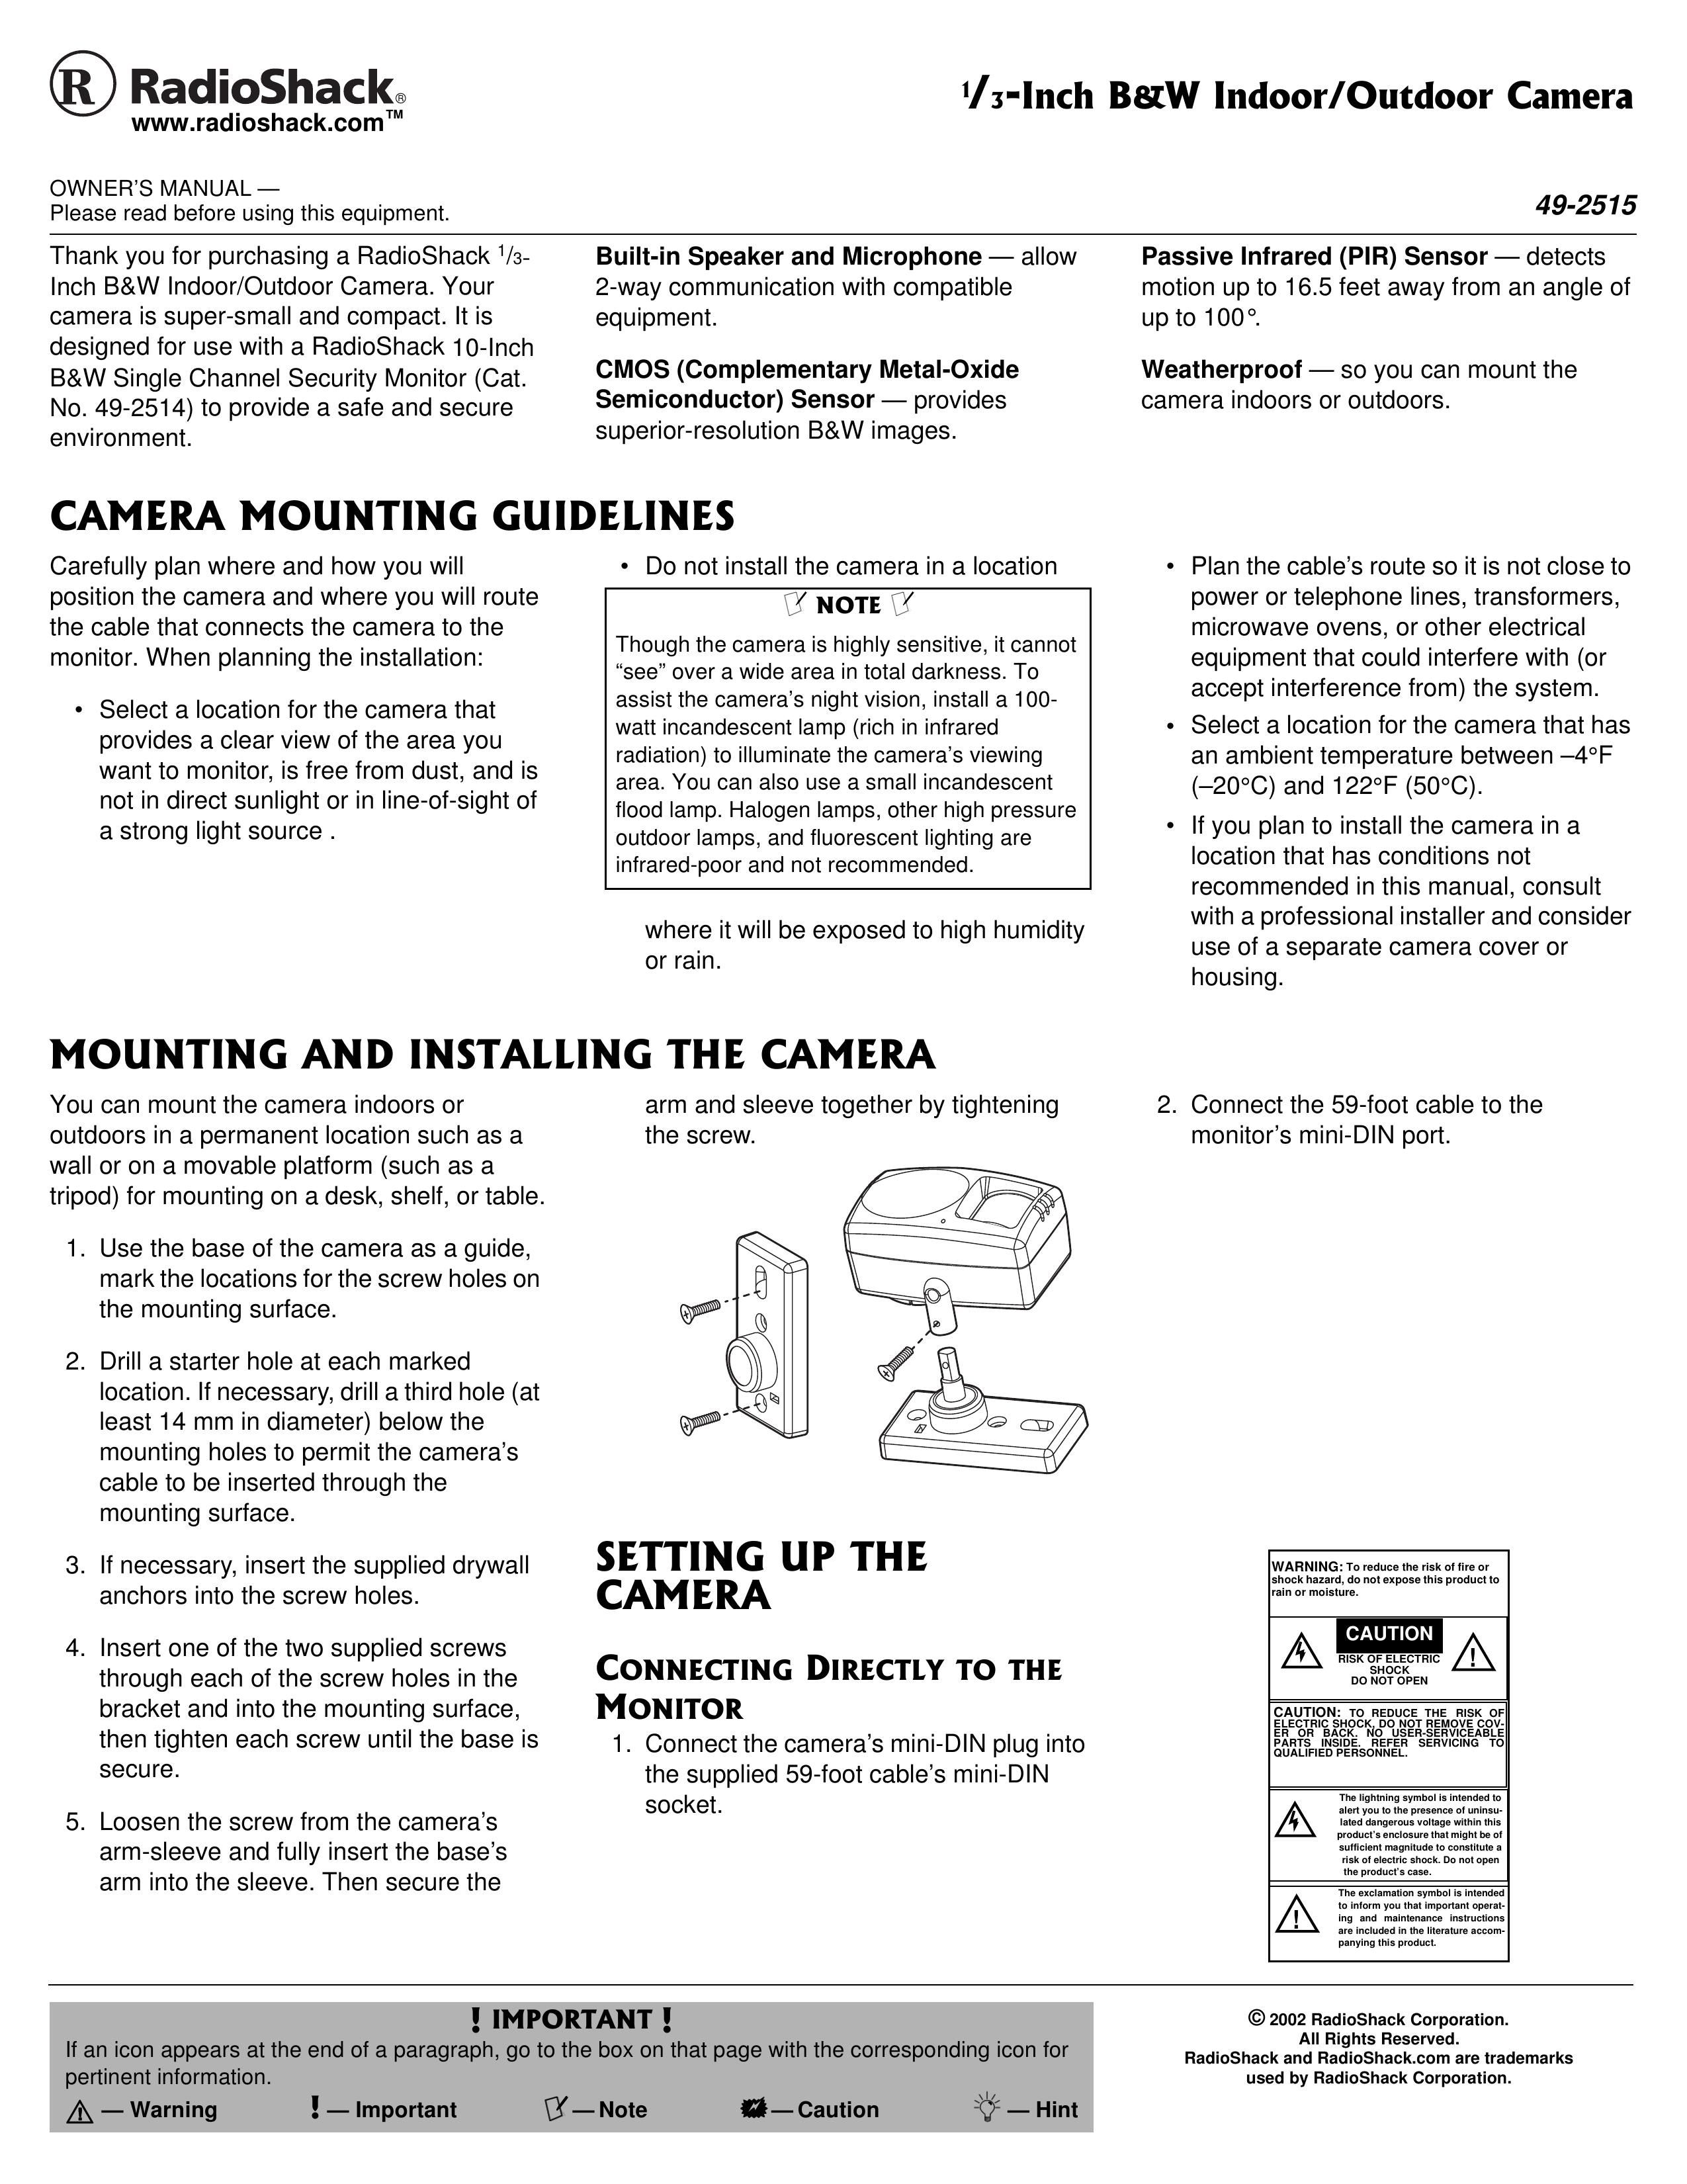 Radio Shack 49-2515 Digital Camera User Manual